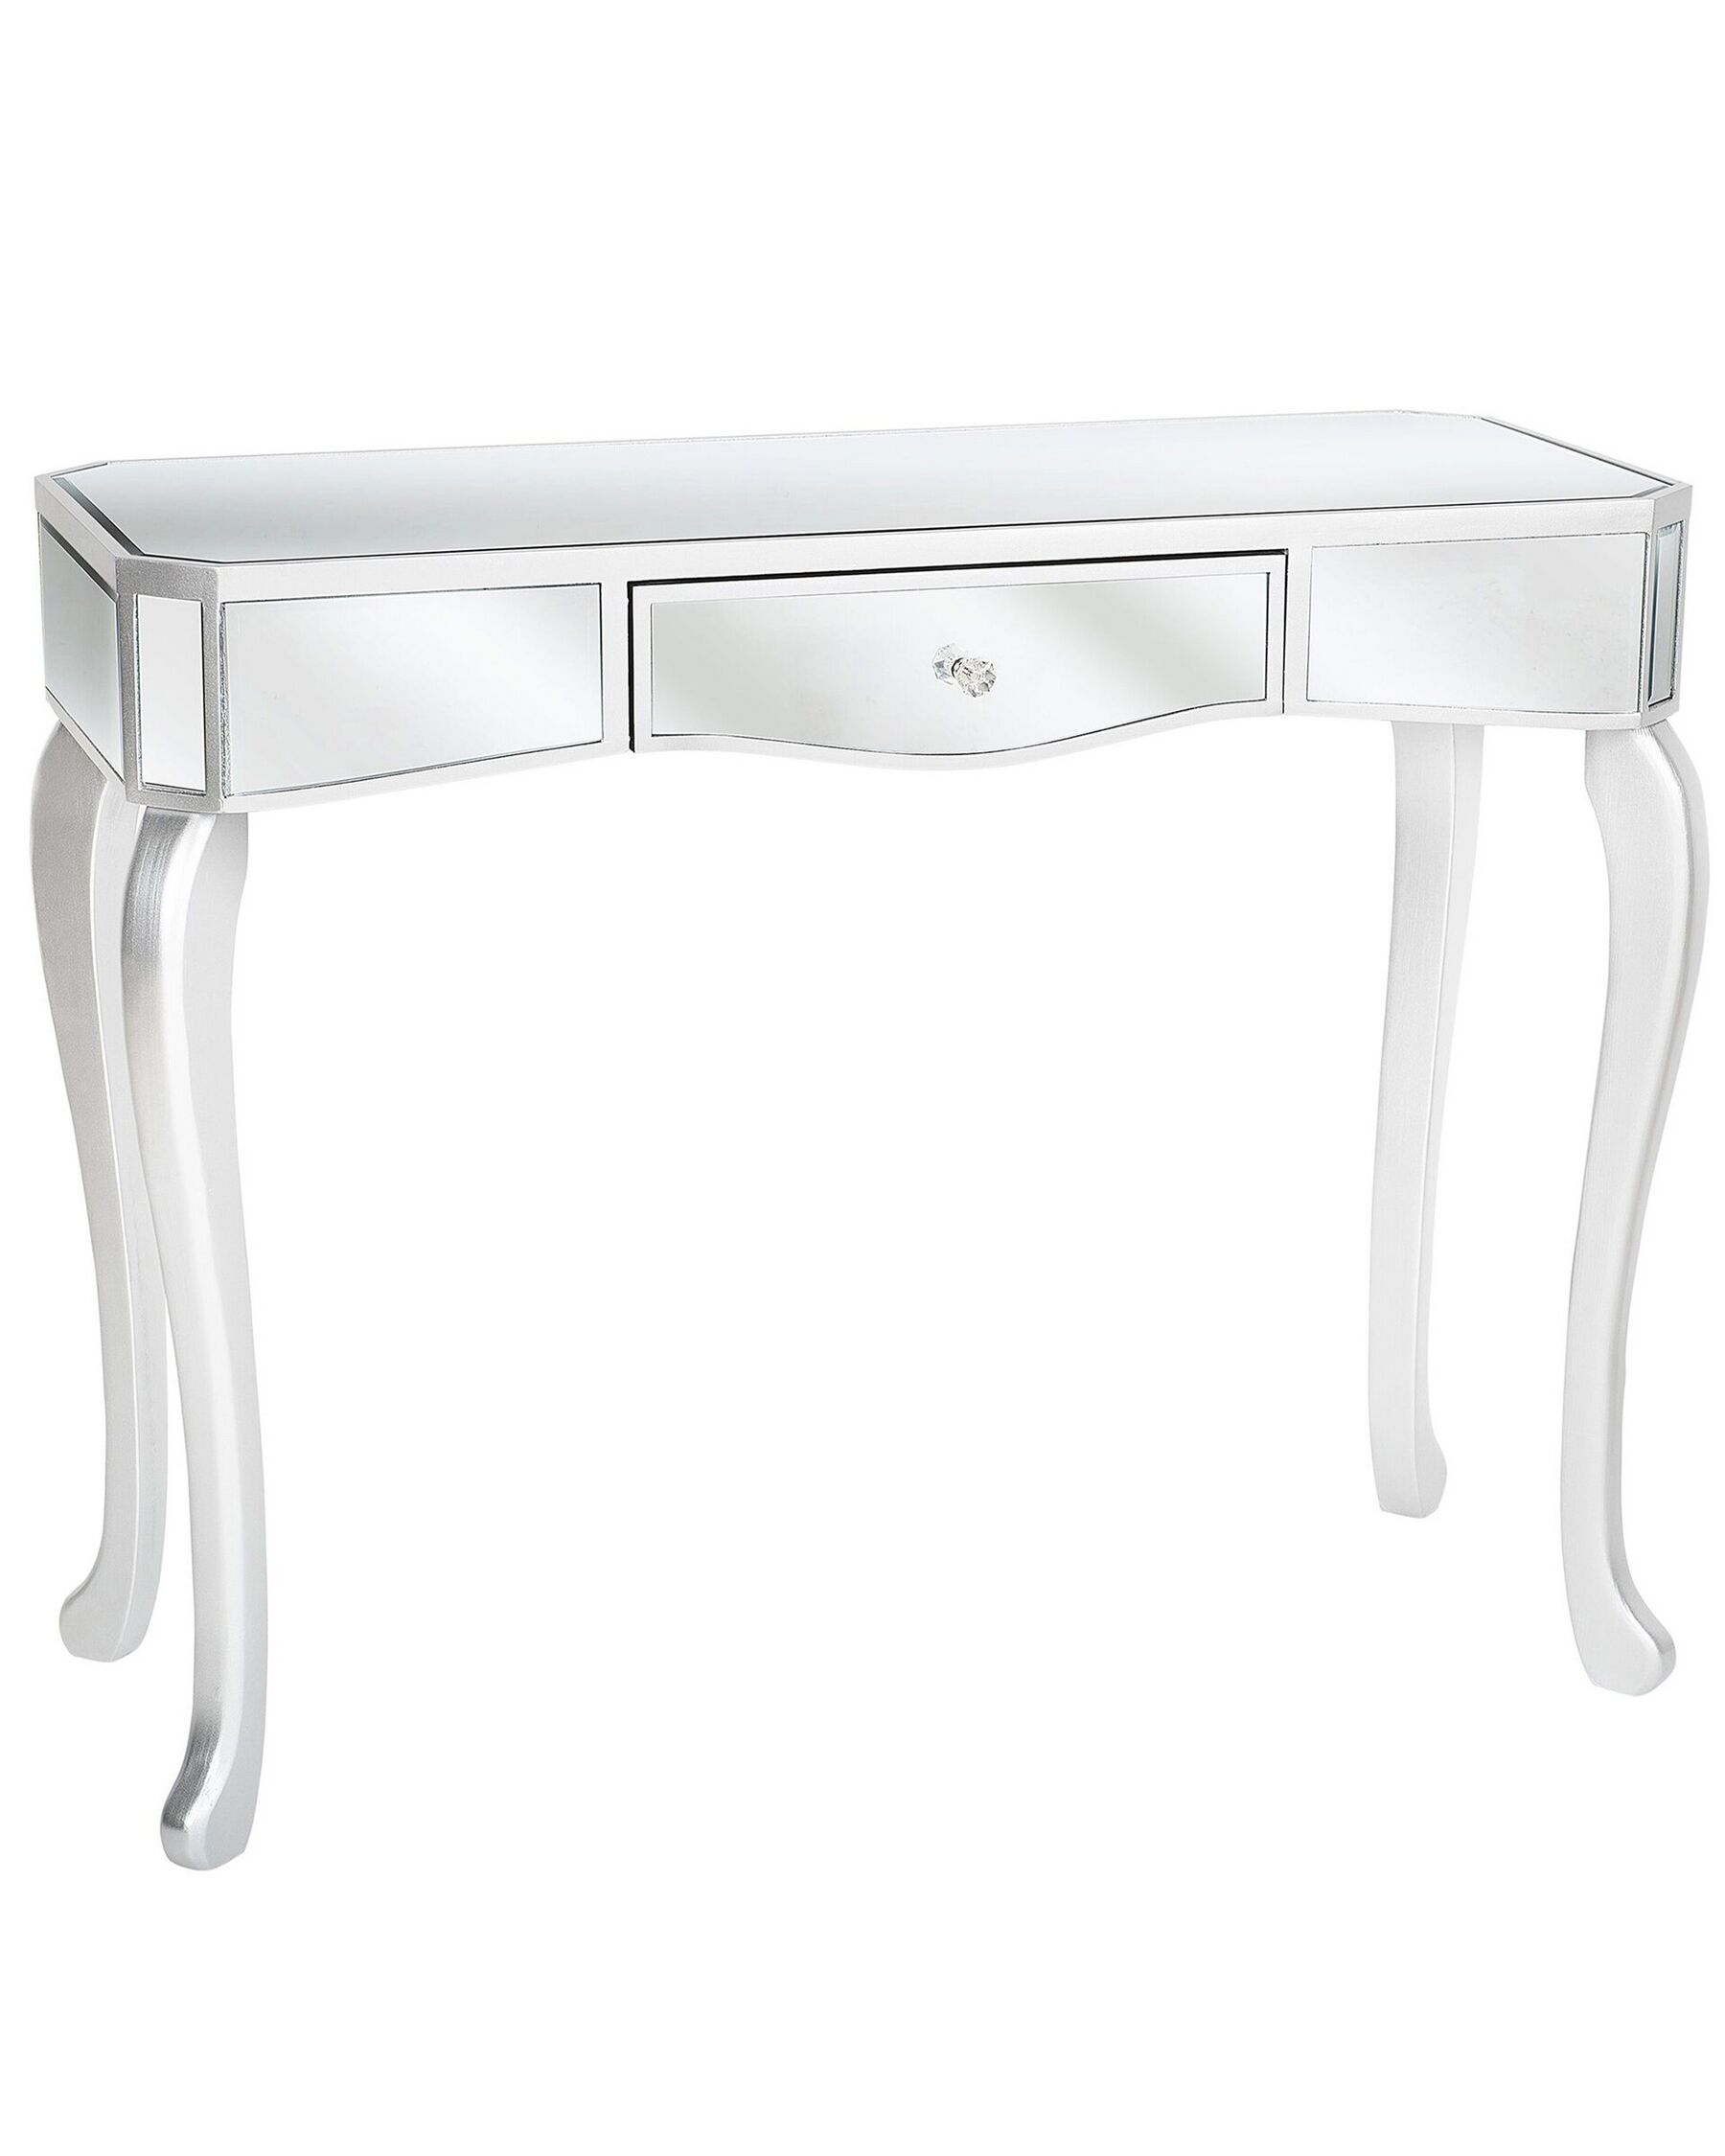 Konzolový stolík so zásuvkou zrkadlový efekt CARCASSONNE_745121